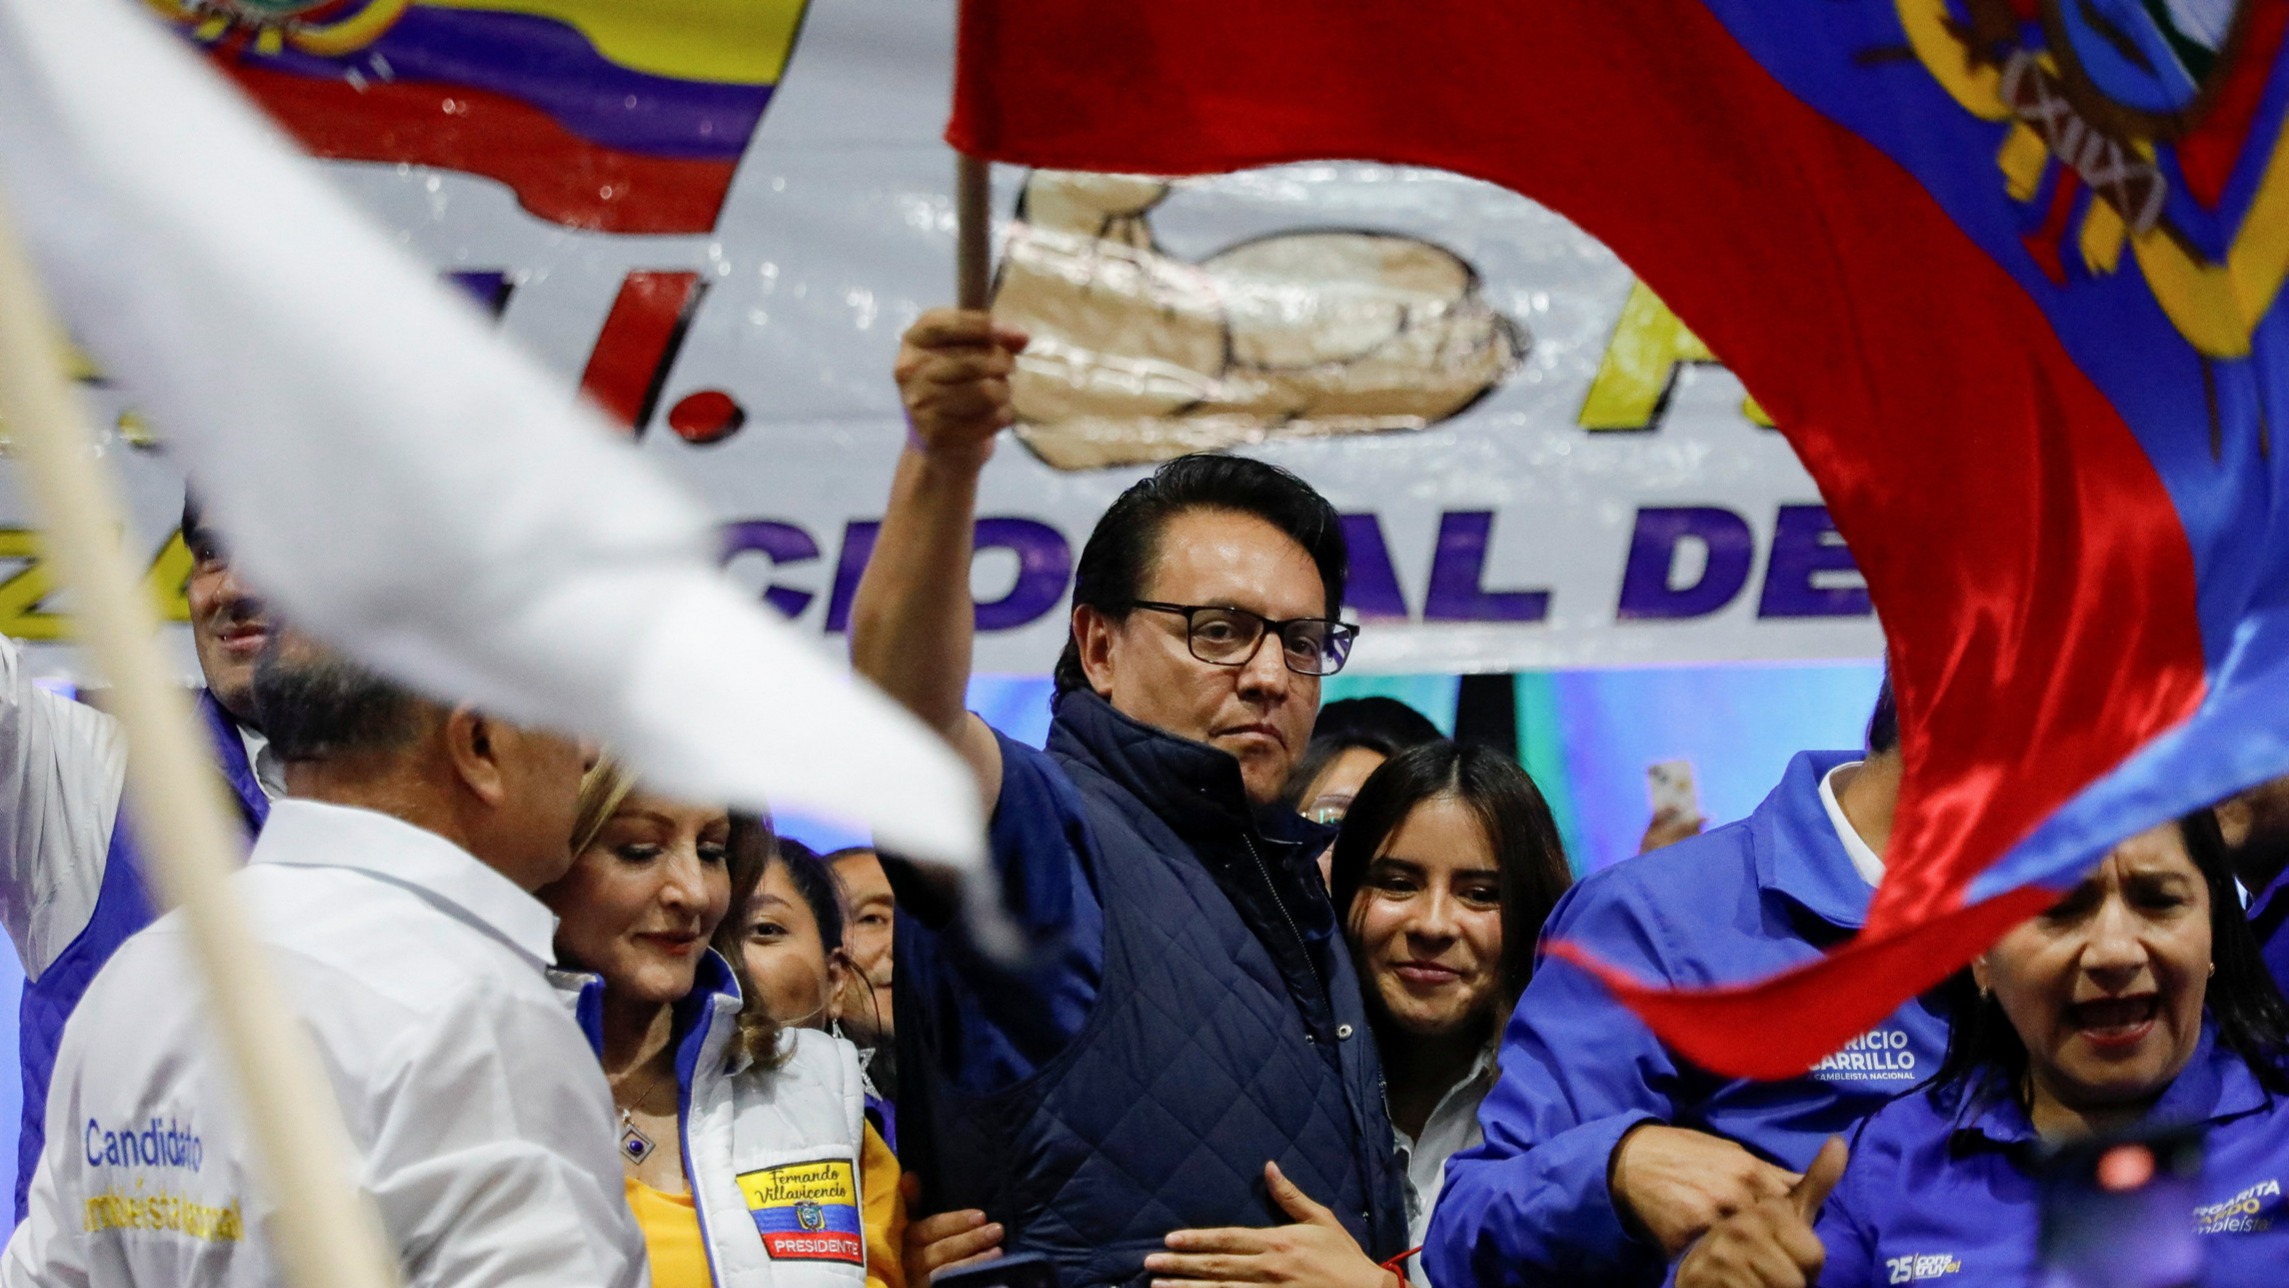 Il candidato alla presidenza dell'Ecuador, Villavicencio ucciso dopo un comizio: stato d'emergenza